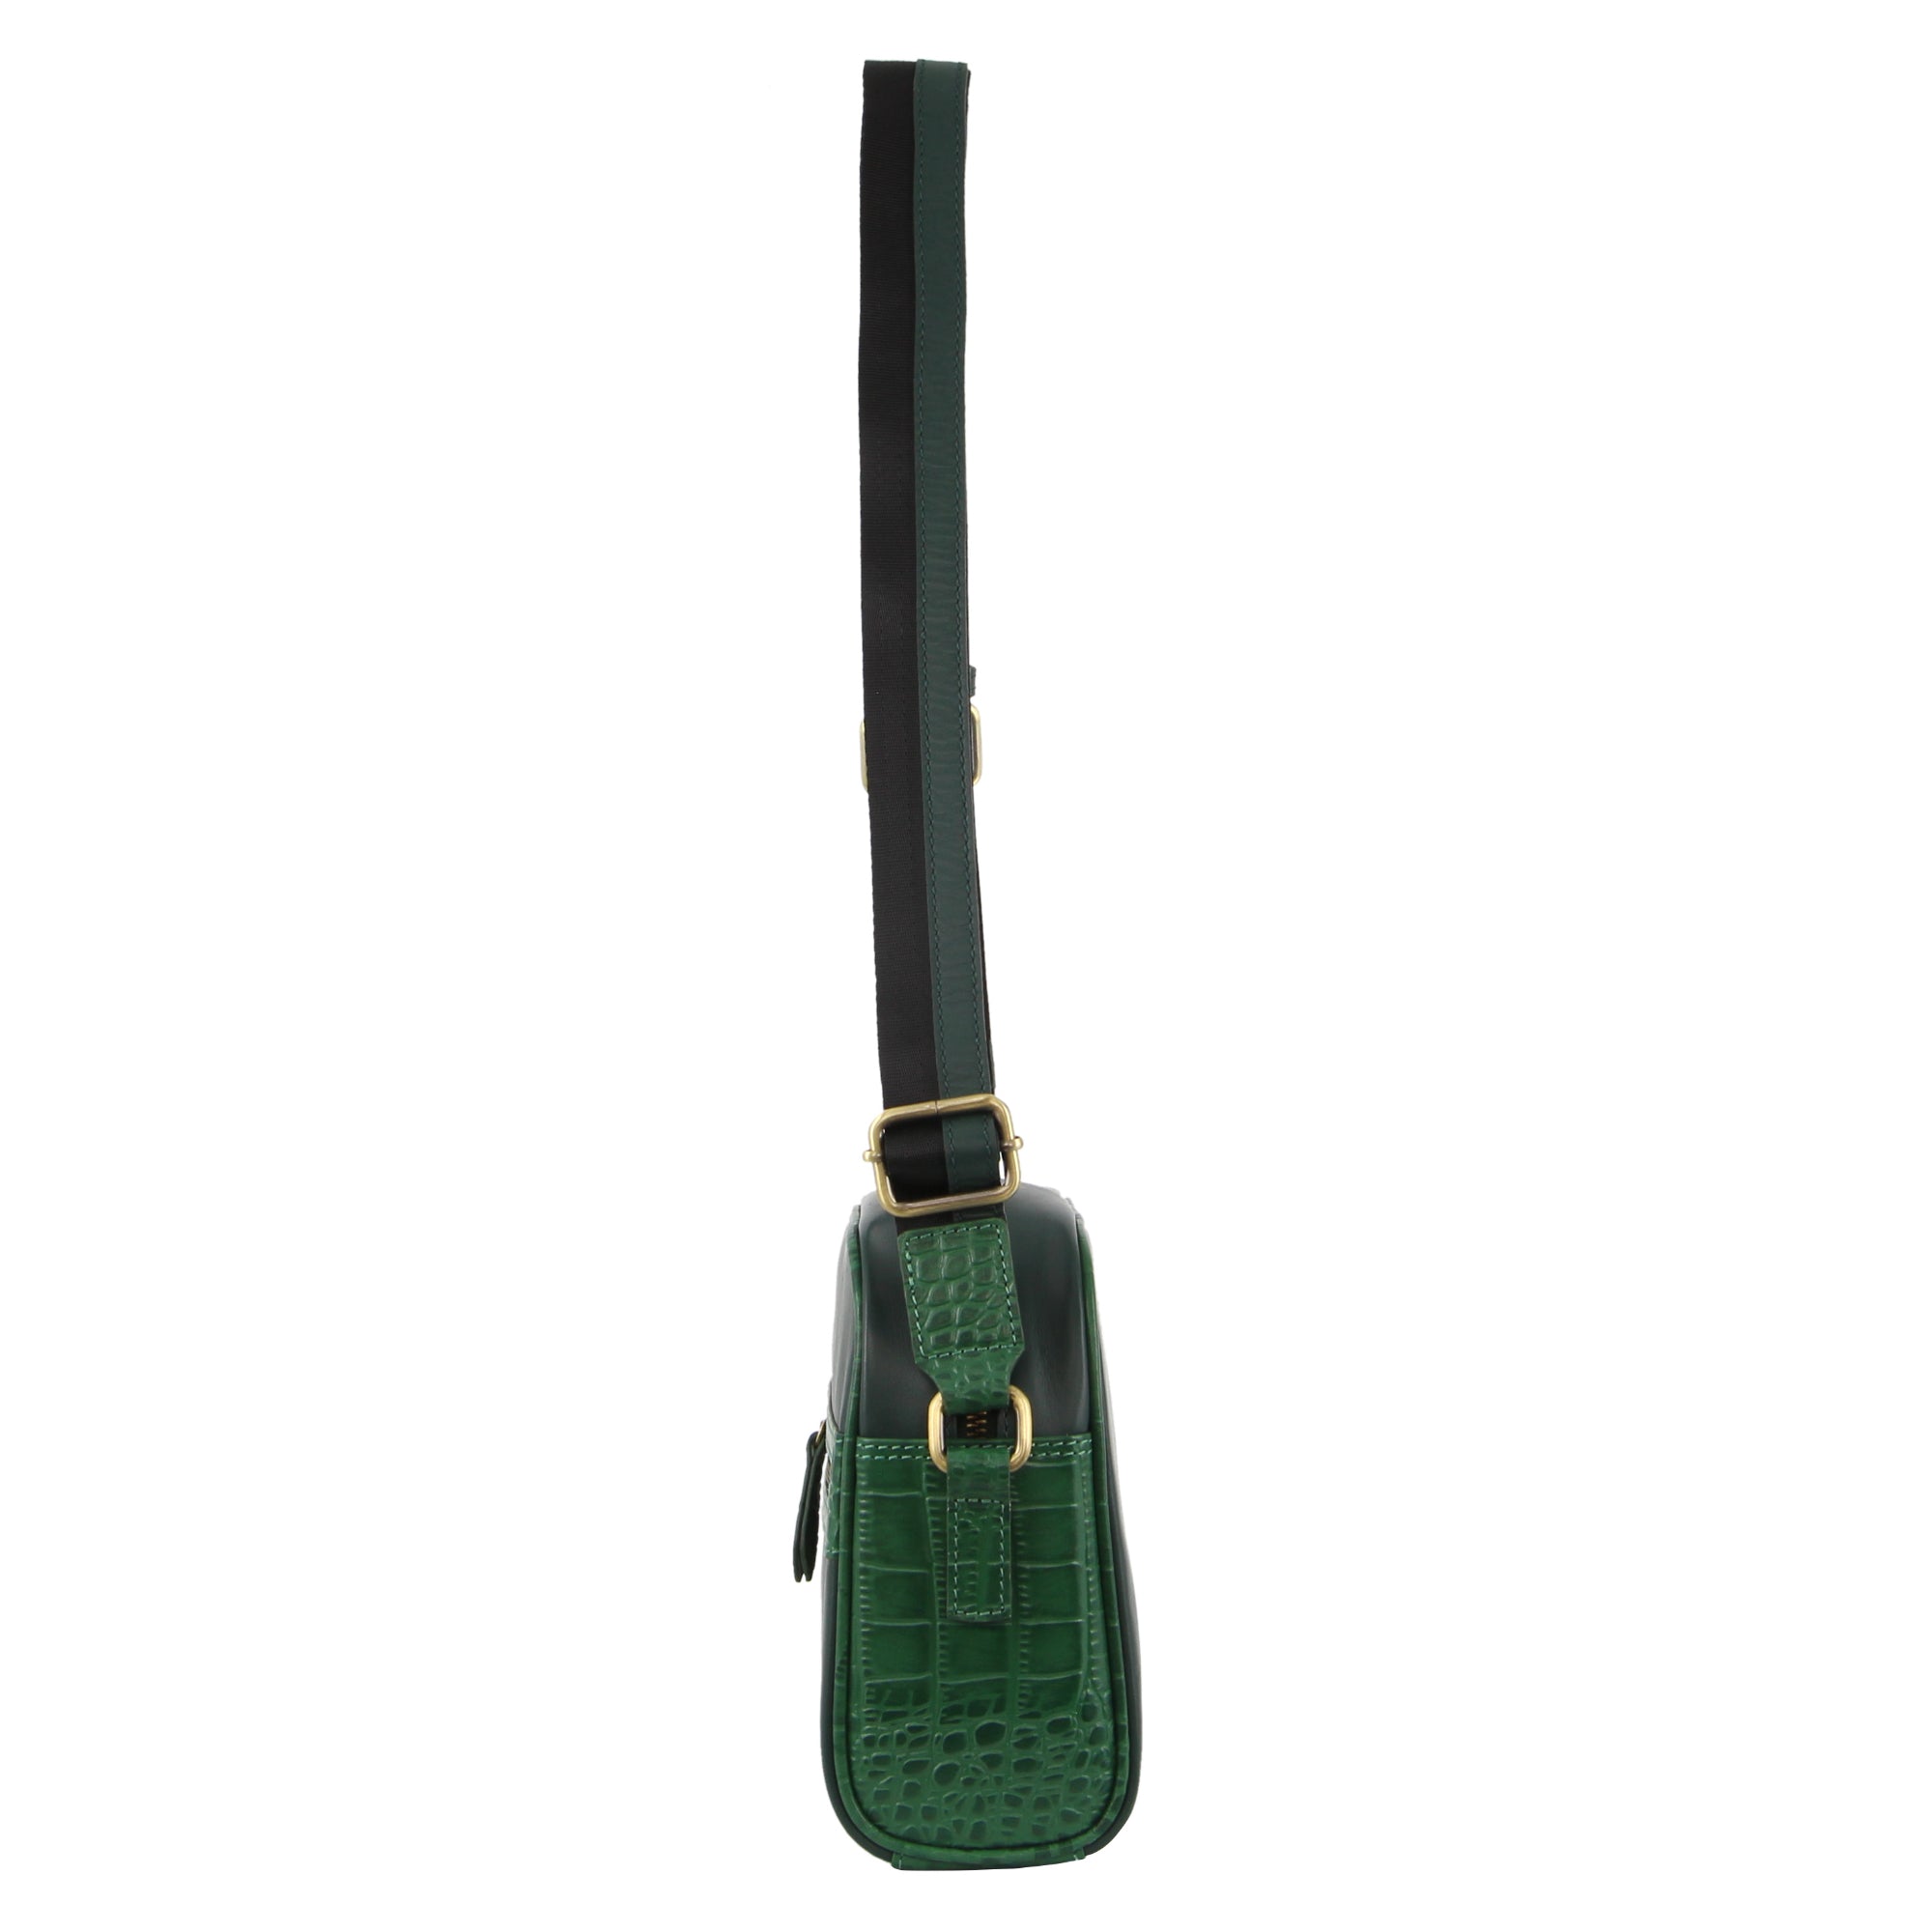 Pierre Cardin Croc-Embossed Leather Cross-Body Bag in Green